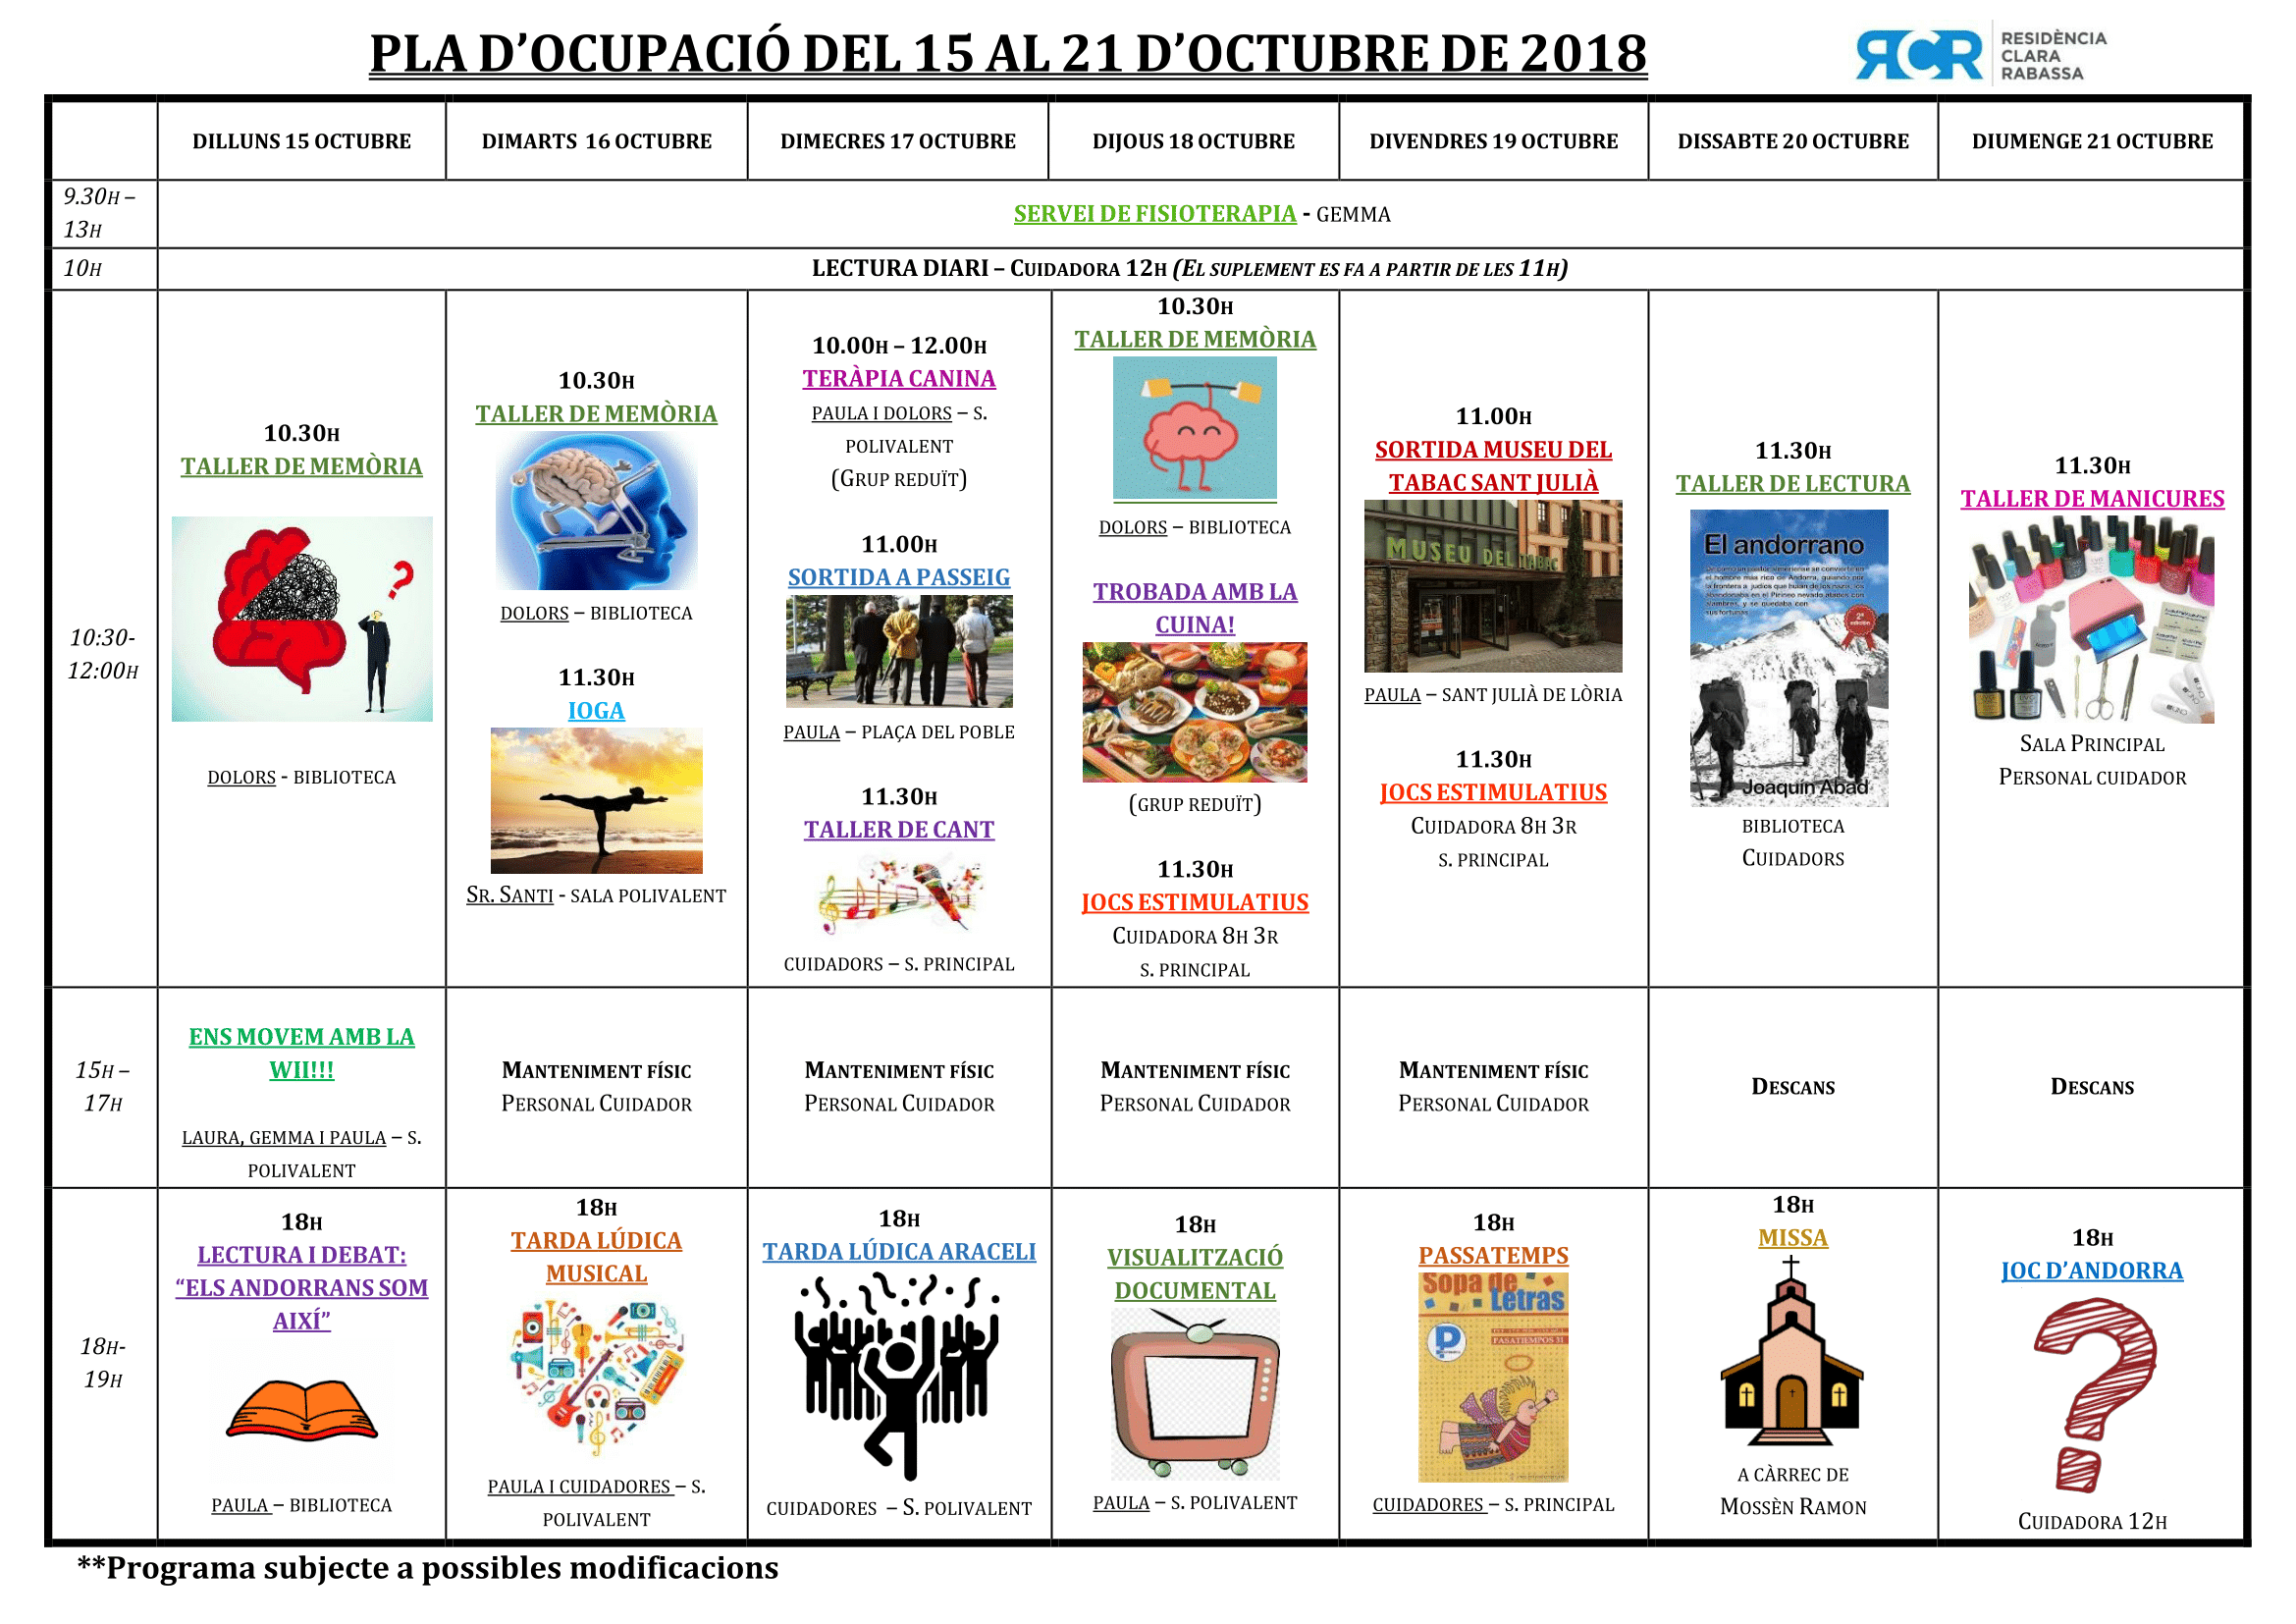 PLA OCUPACIÓ DEL 15 AL 21 D’OCTUBRE DE 2018